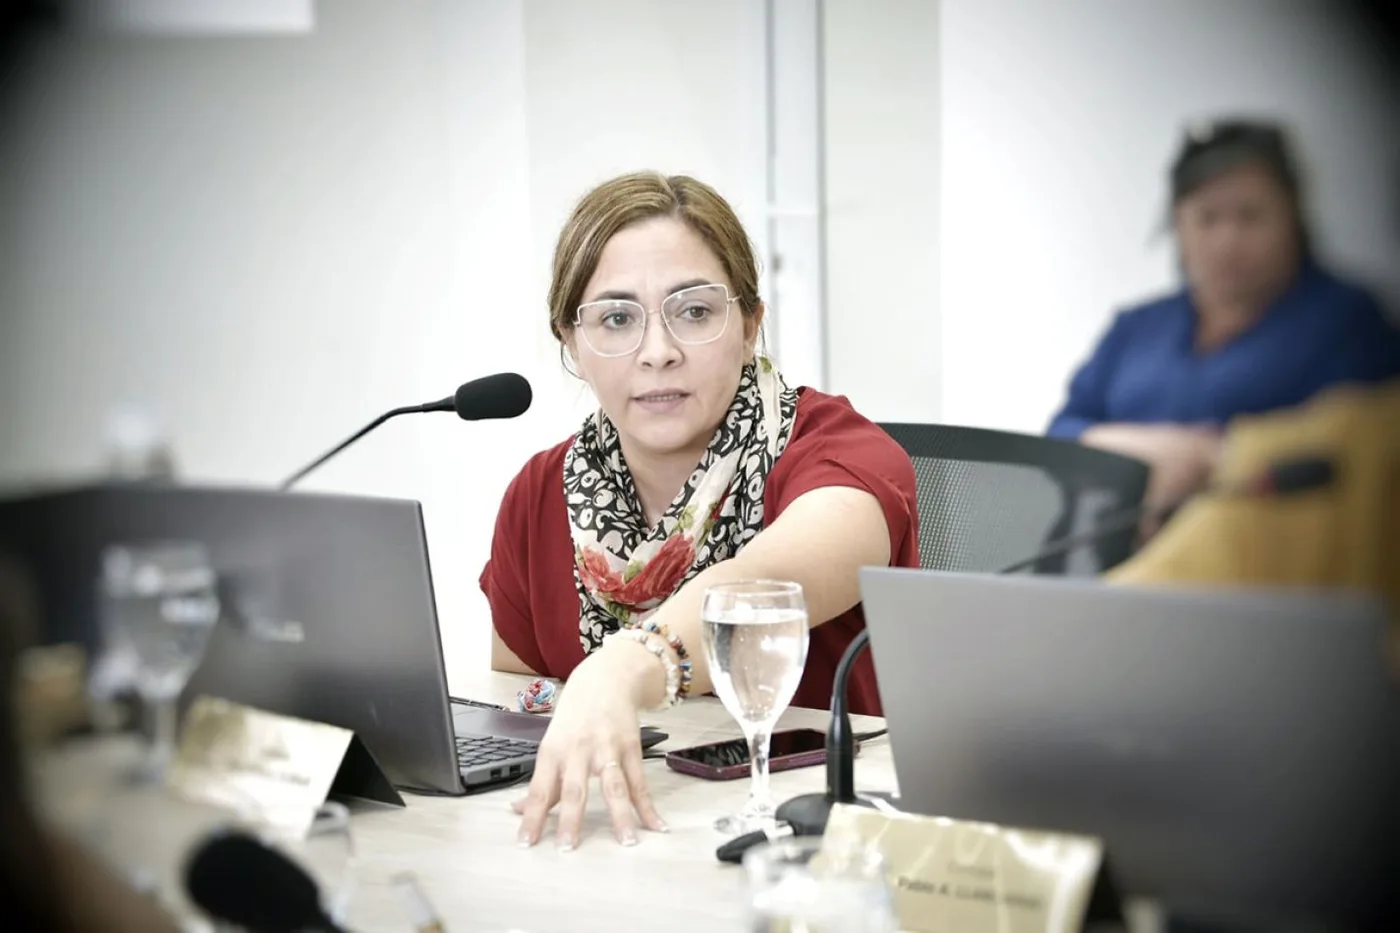 Cintia Susñar, concejal de la ciudad de Río Grande.